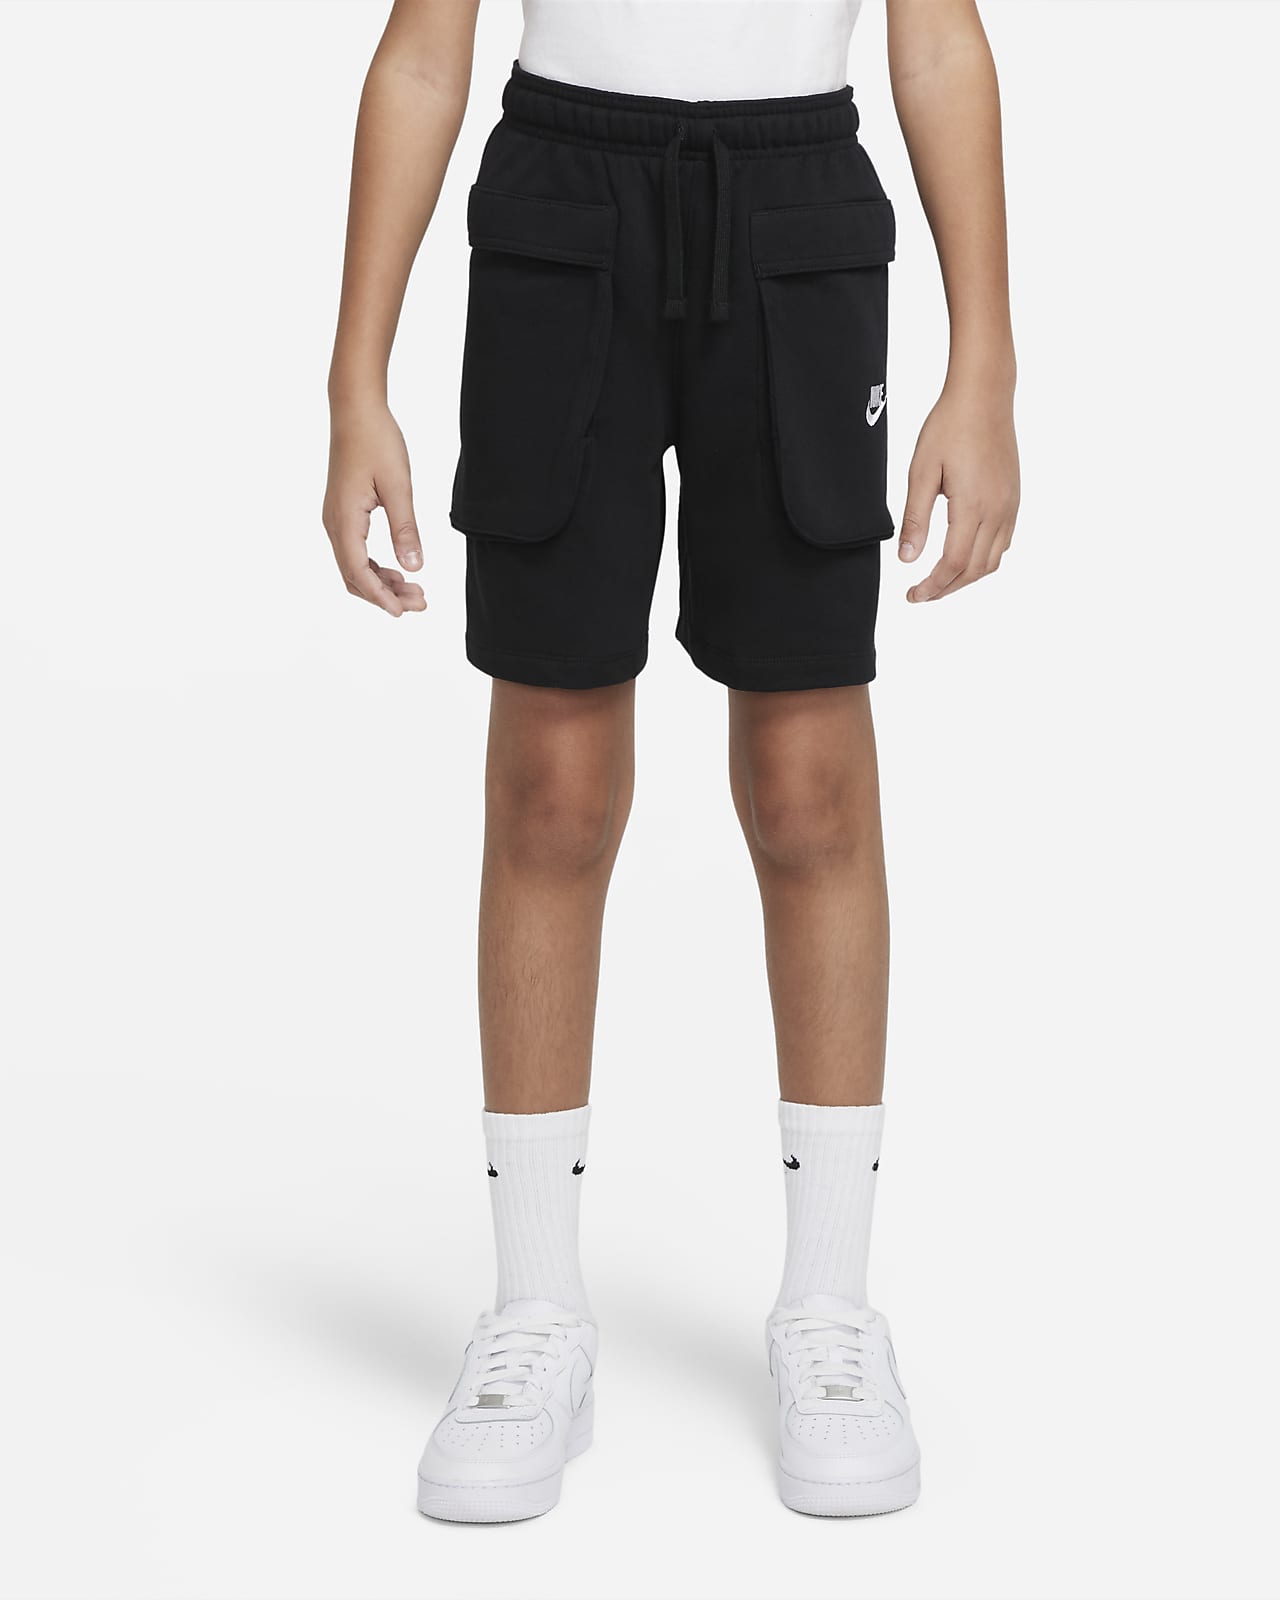 Nike Sportswear Older Kids' (Boys') Cargo Shorts